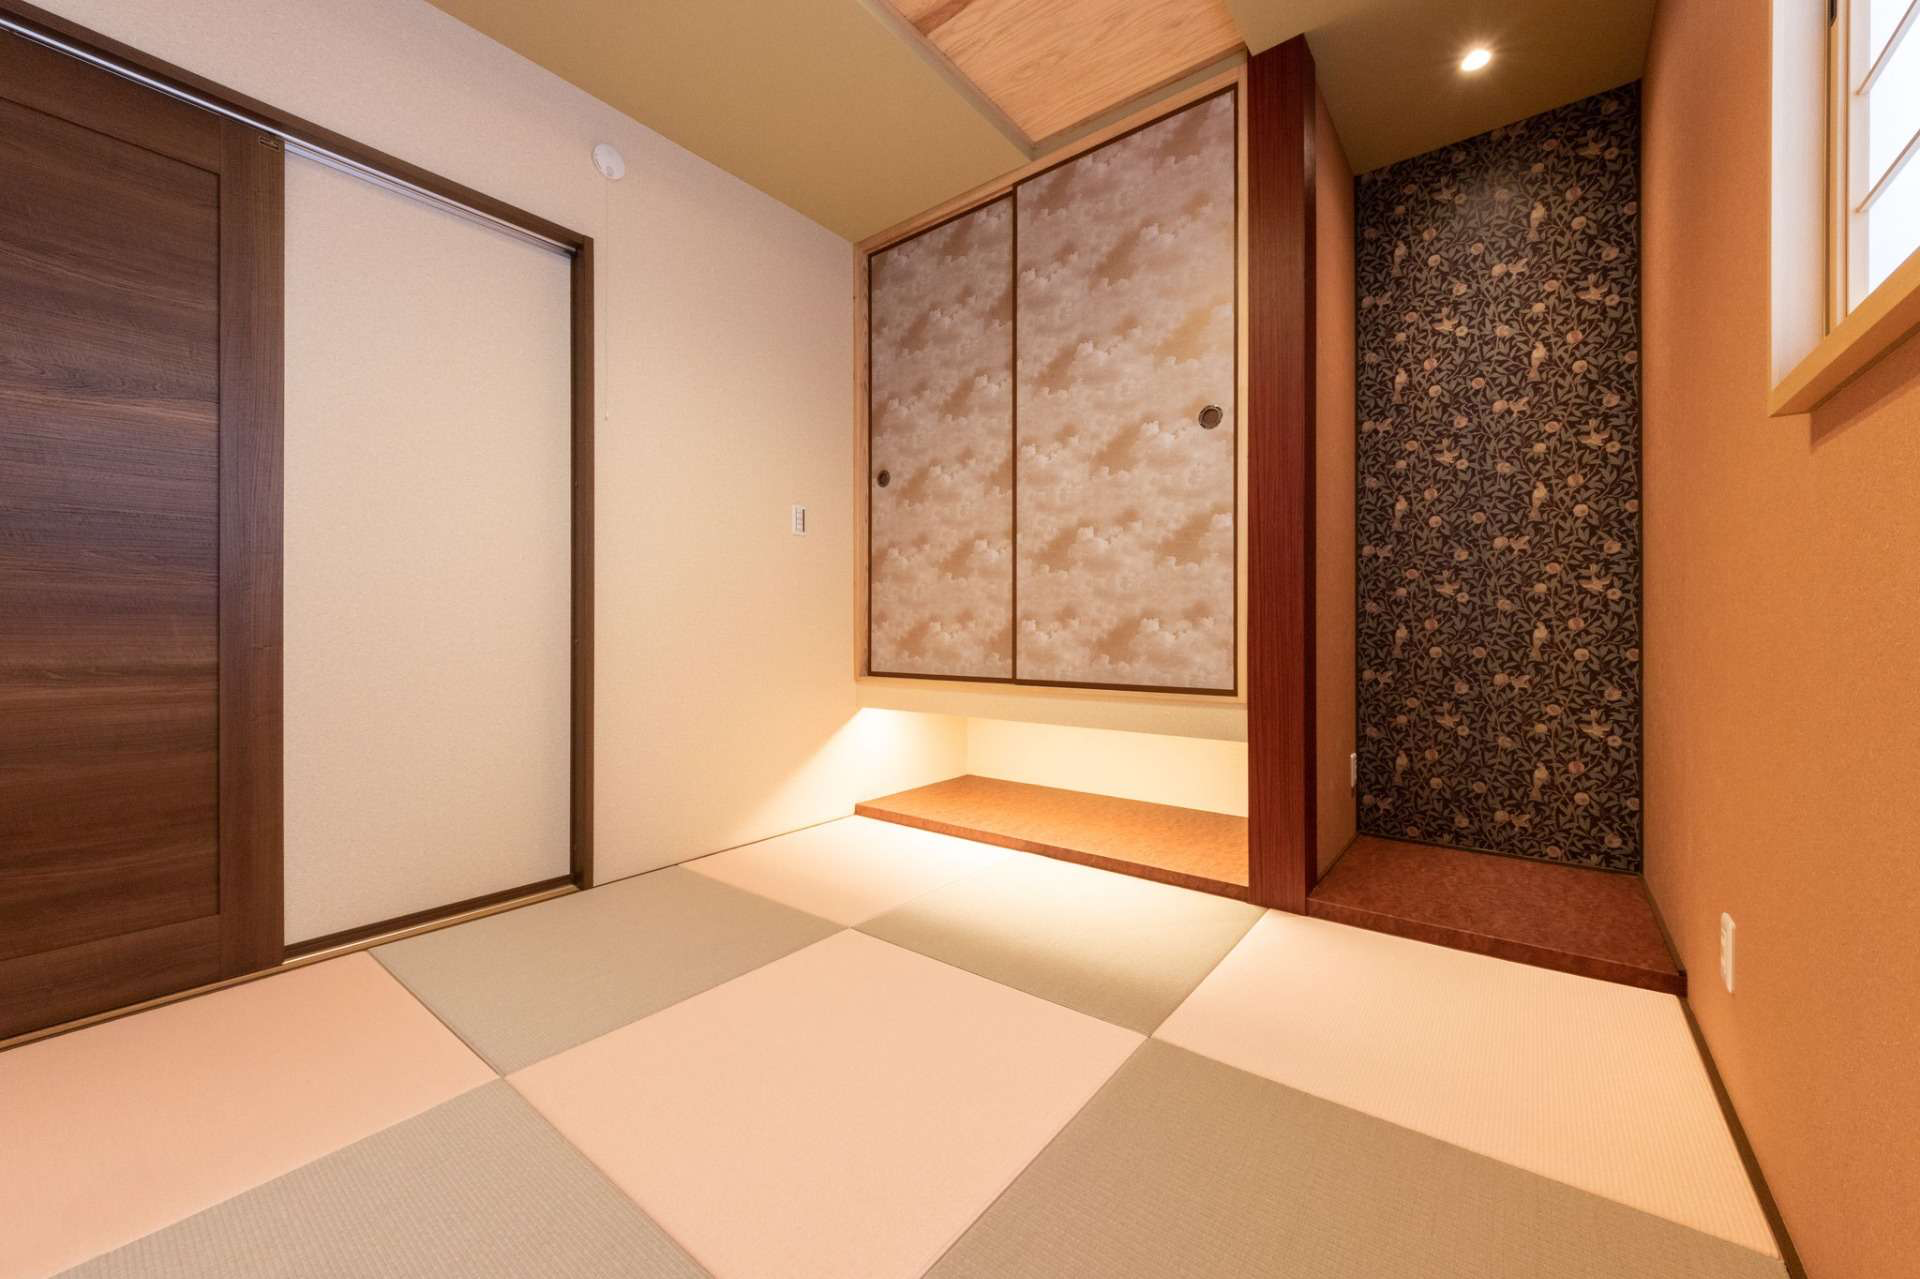 【和室を彩る照明でふっと心が和む安らぎの空間に】宮崎市で新築・リノベーション | mikiデザインハウス